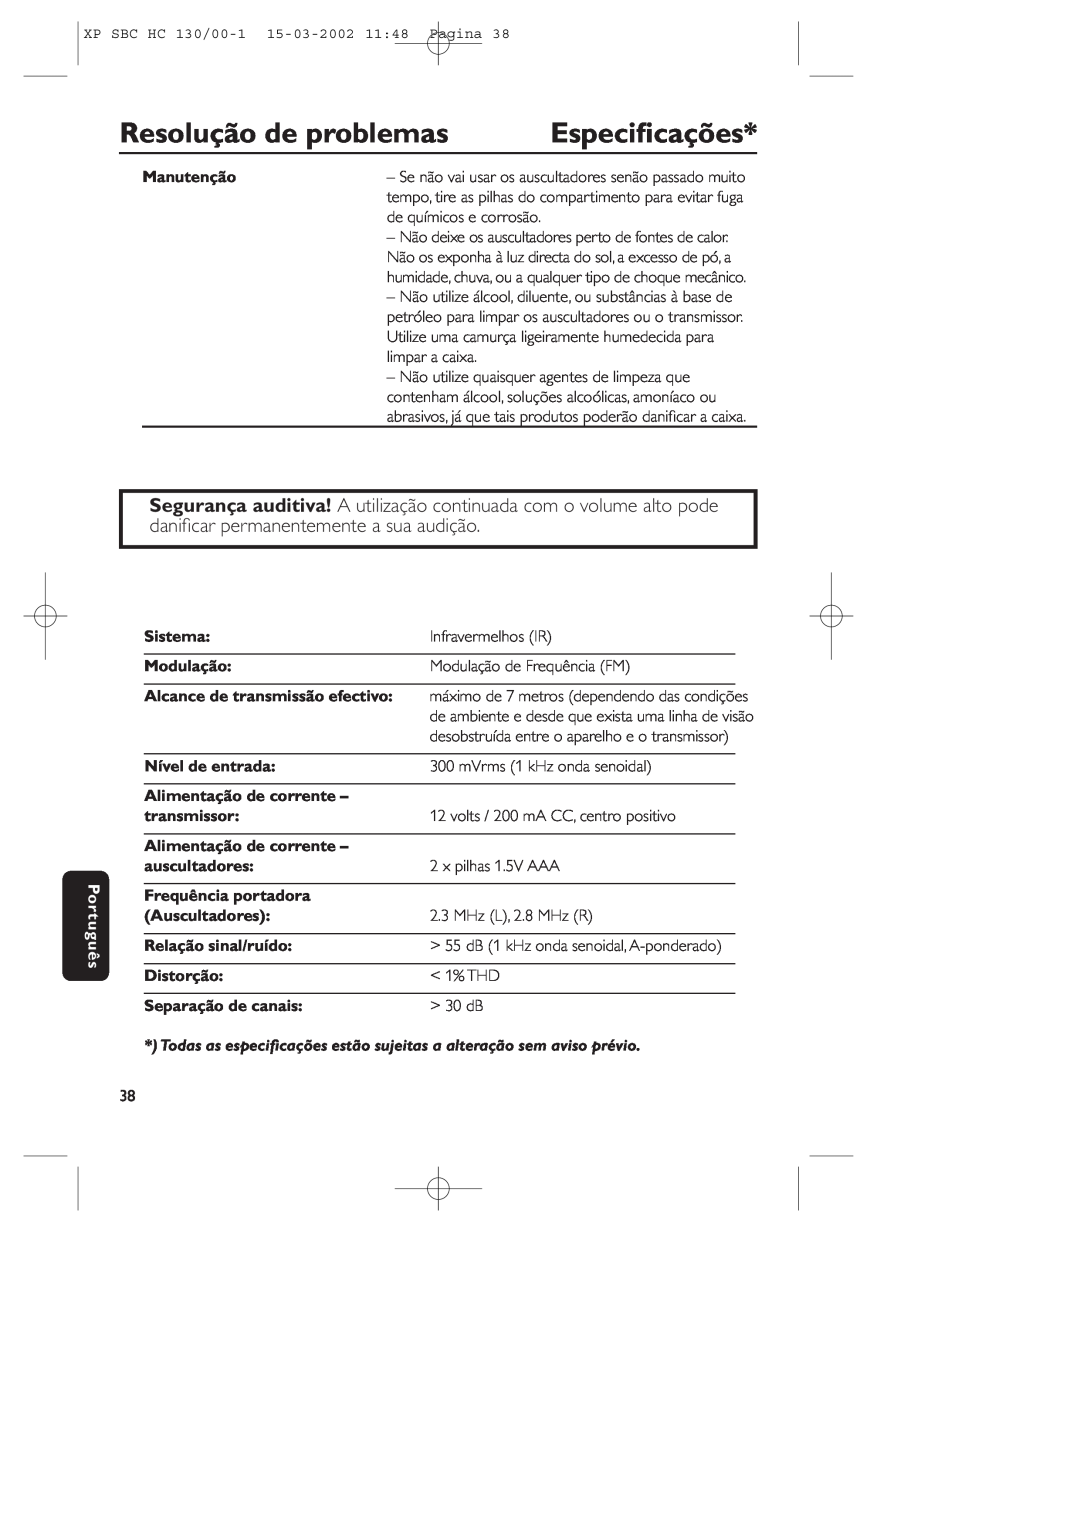 Philips SBC HC130 Especiﬁcações, Resolução de problemas, Manutenção, Português, Sistema, Infravermelhos IR, Modulação 